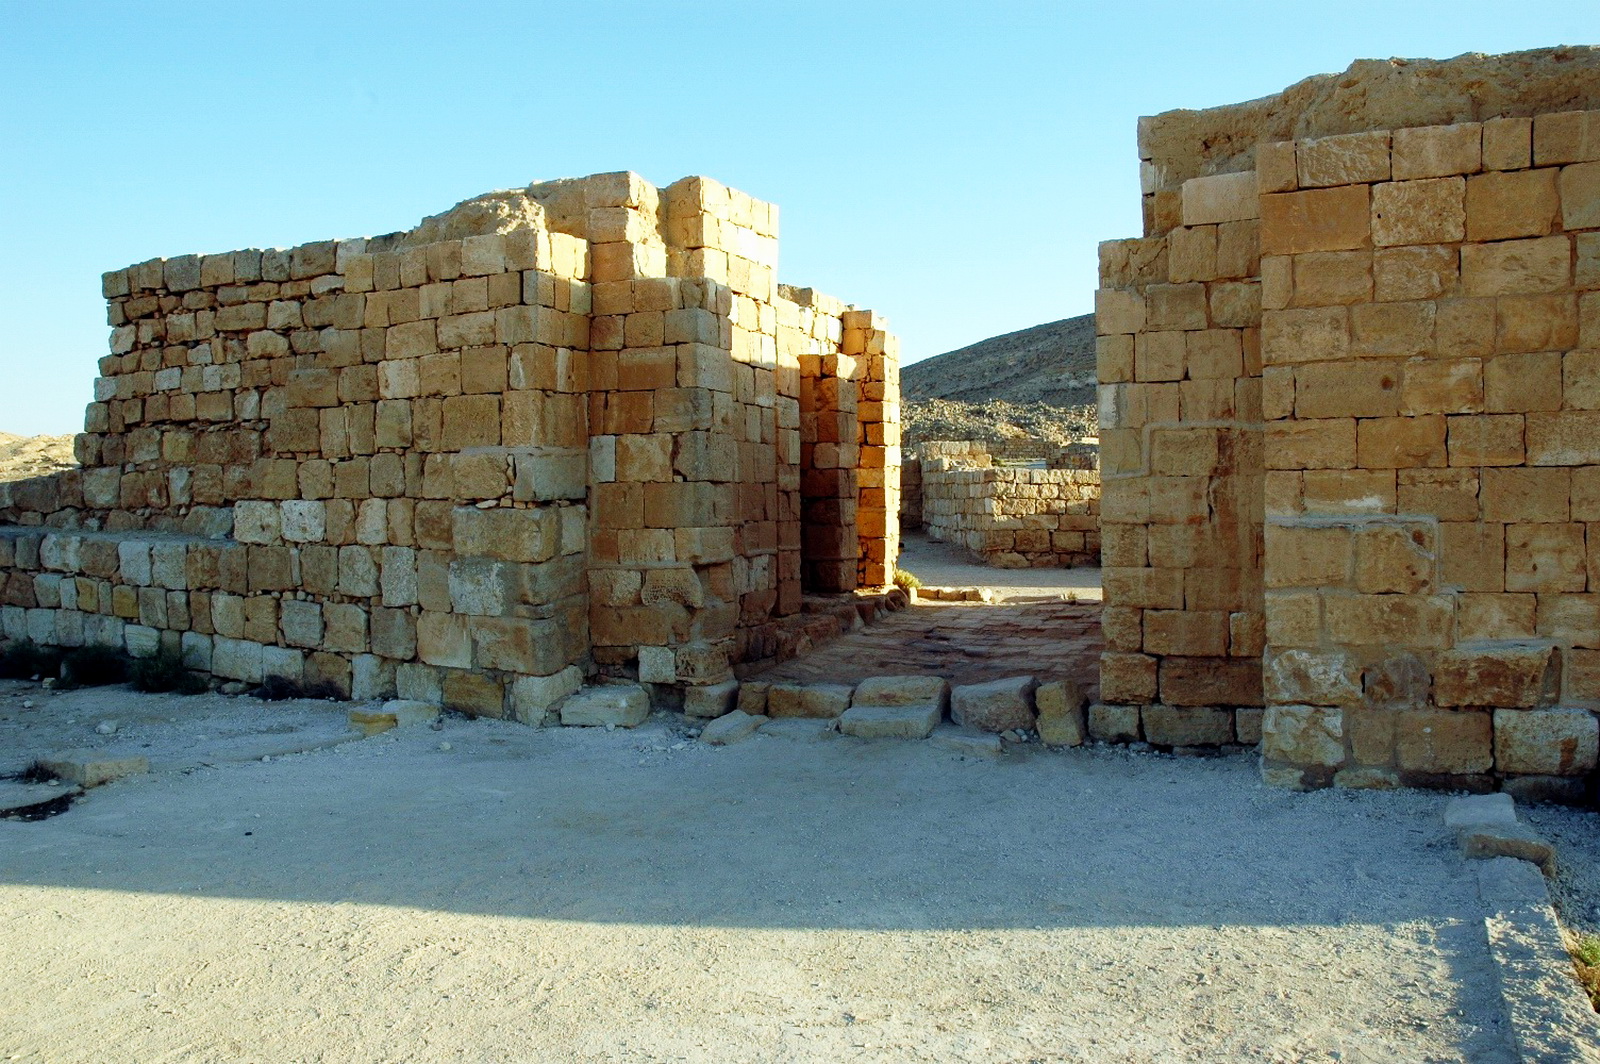 ממשית - שרידים ביזאנטים בעיקר, על יסודות עיר נבטית. שער הכניסה הראשי